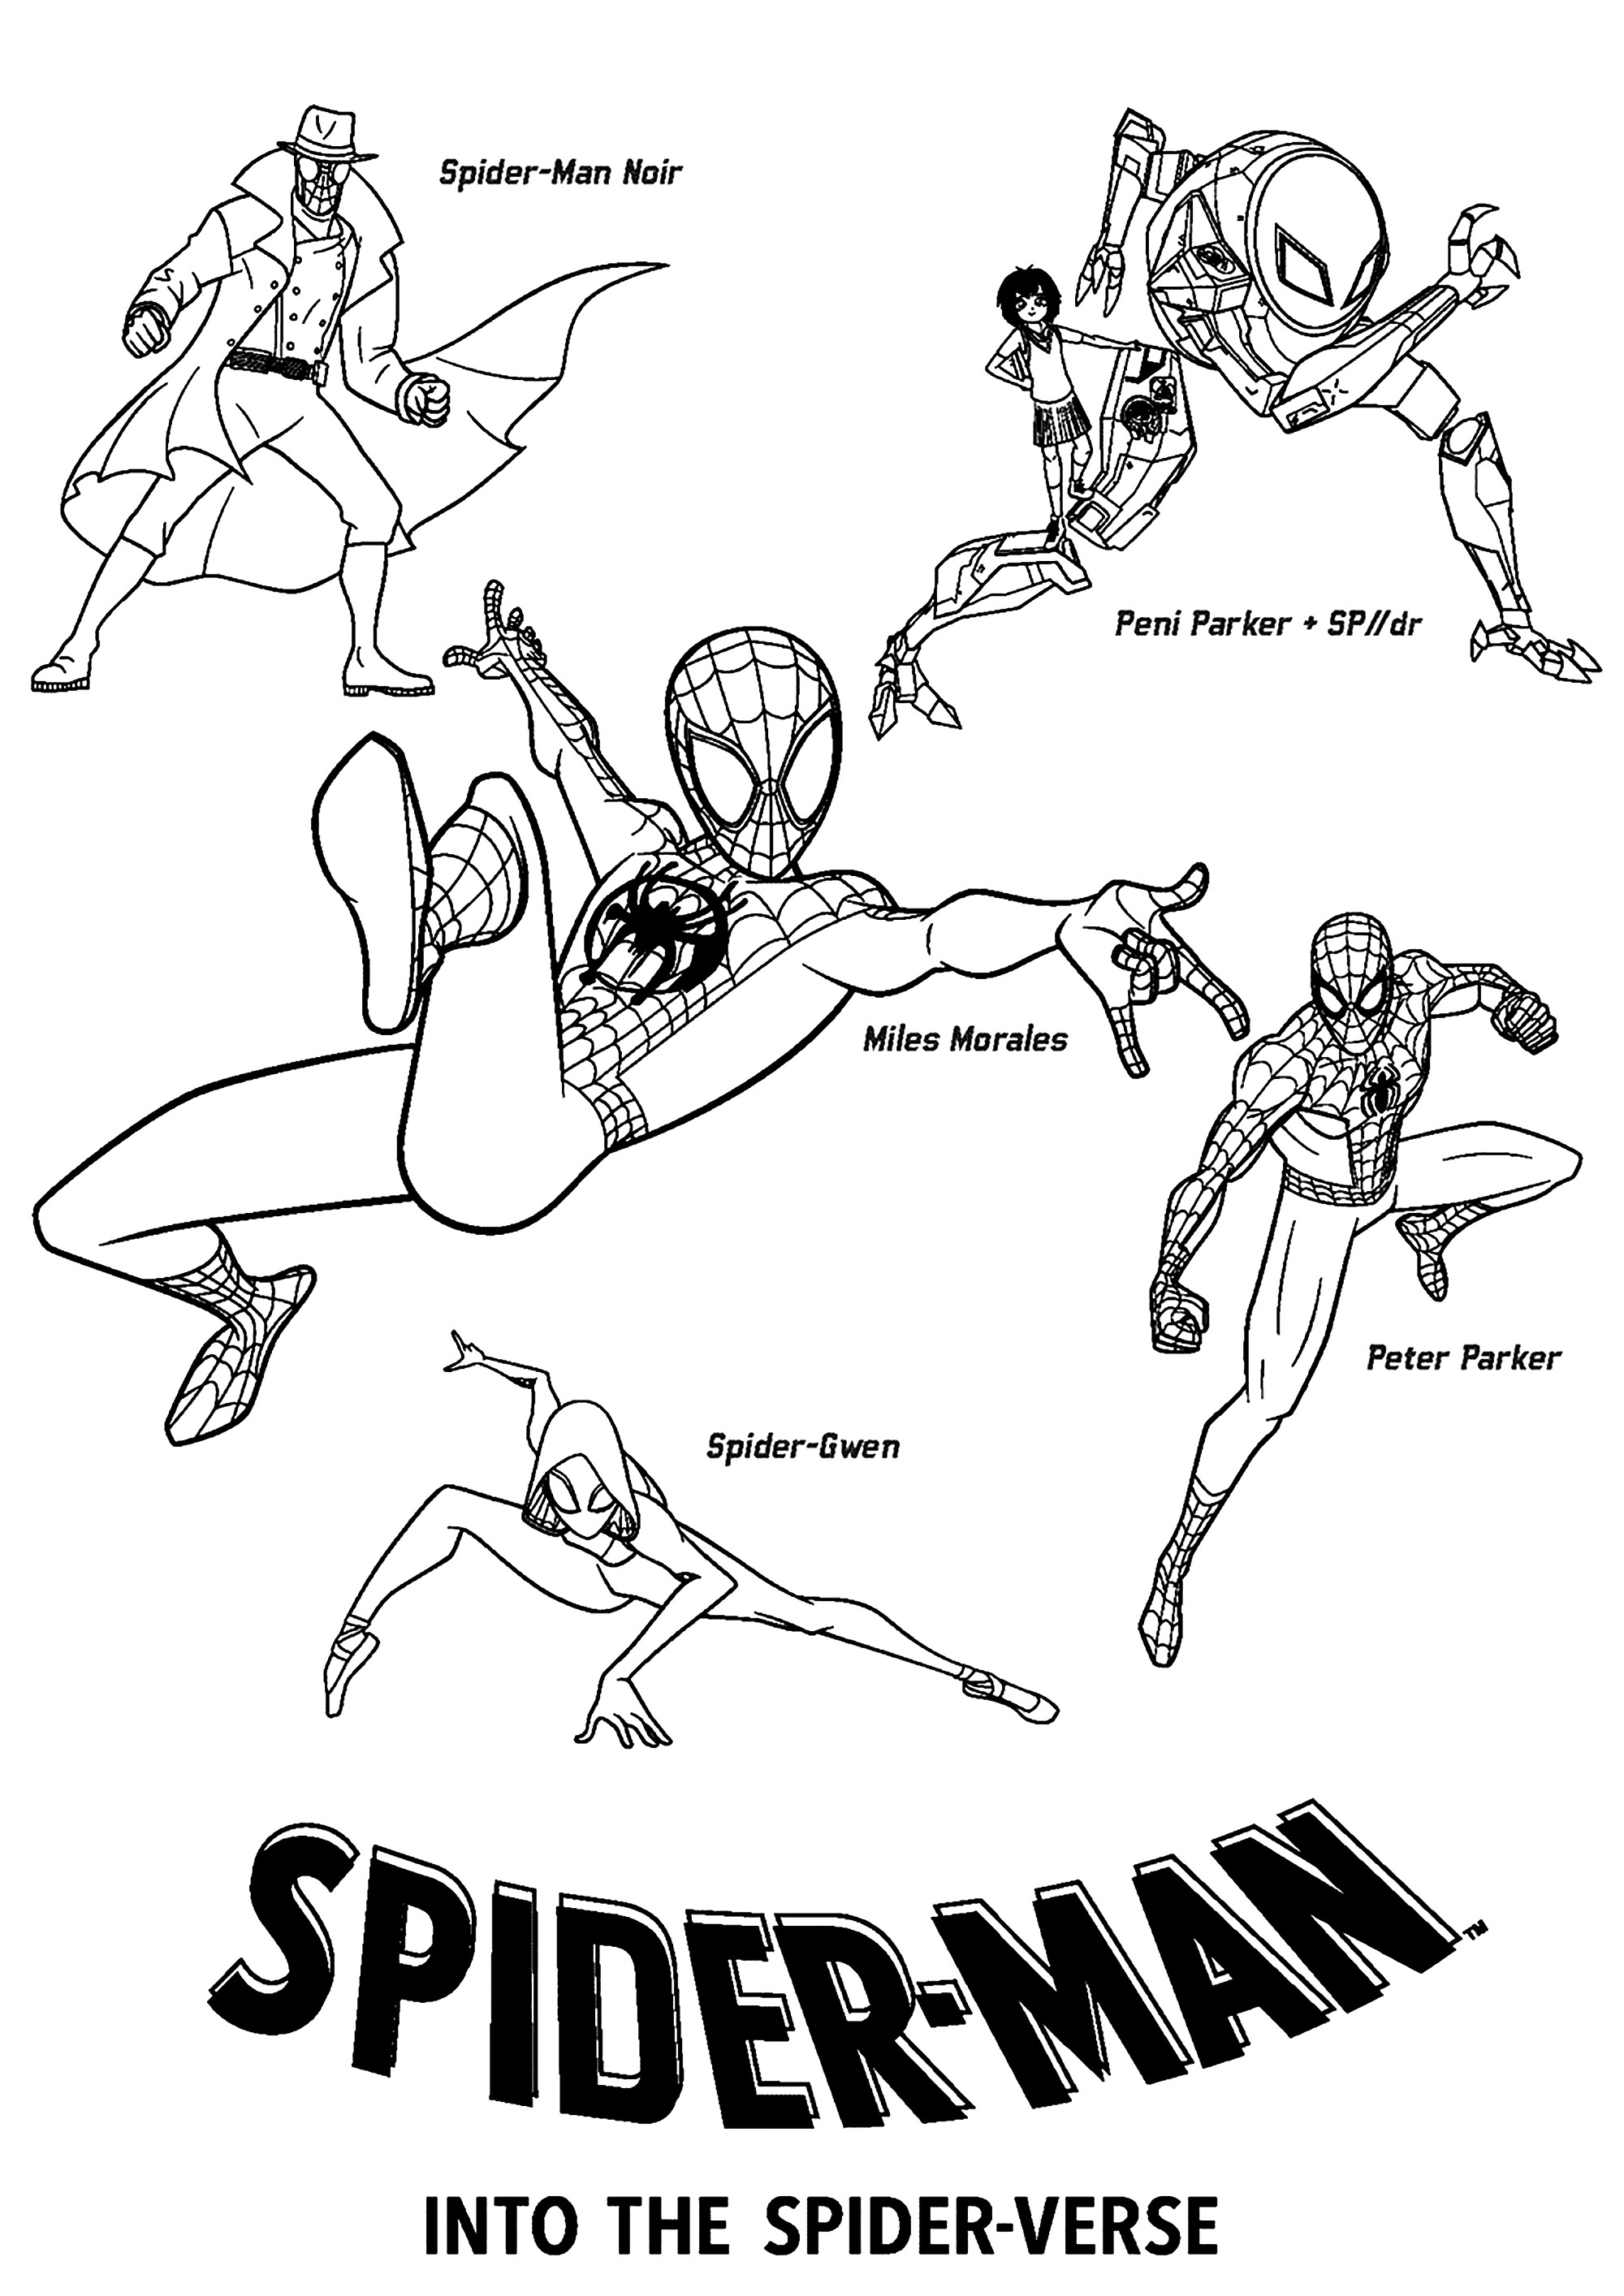 Spider-Man into the Spider Verse : Personnages. Spider-Gwen, Spider-Man (Peter Parker et Mike Morales), Peni Parker   SP//dr, Spider-Man Noir